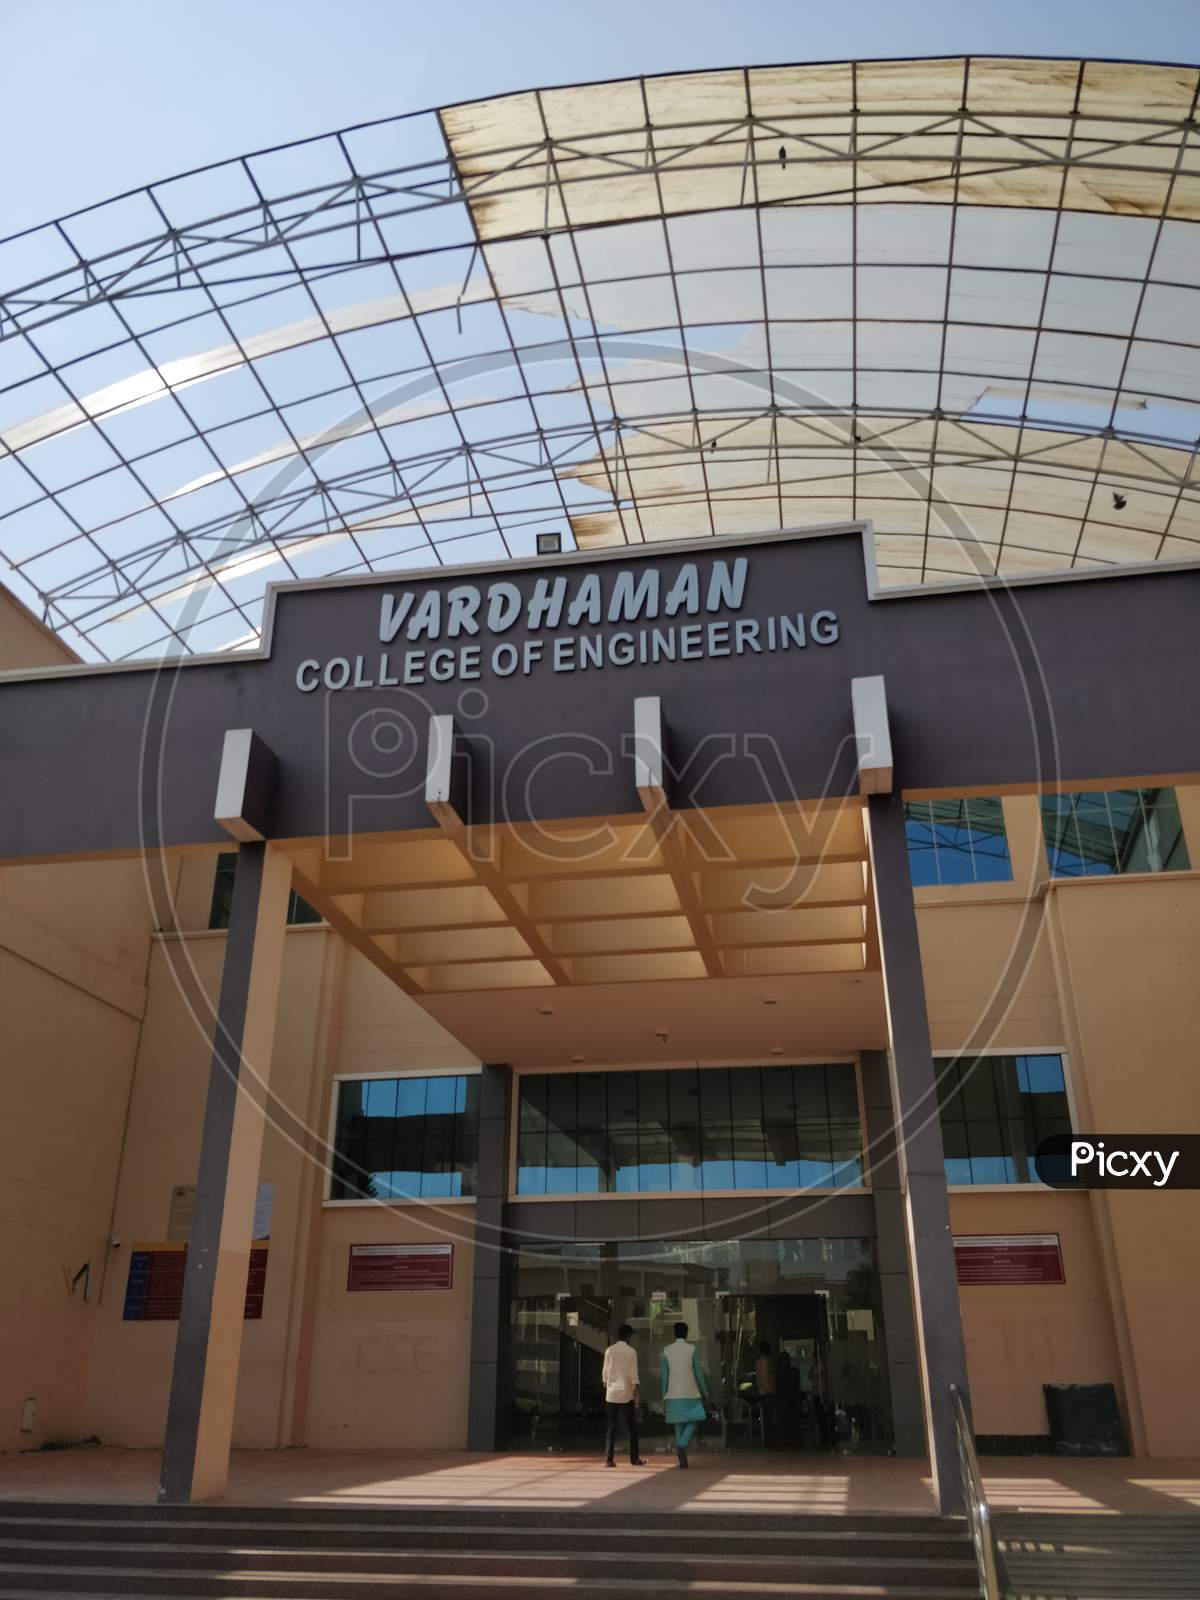 Vardhaman college of engineering